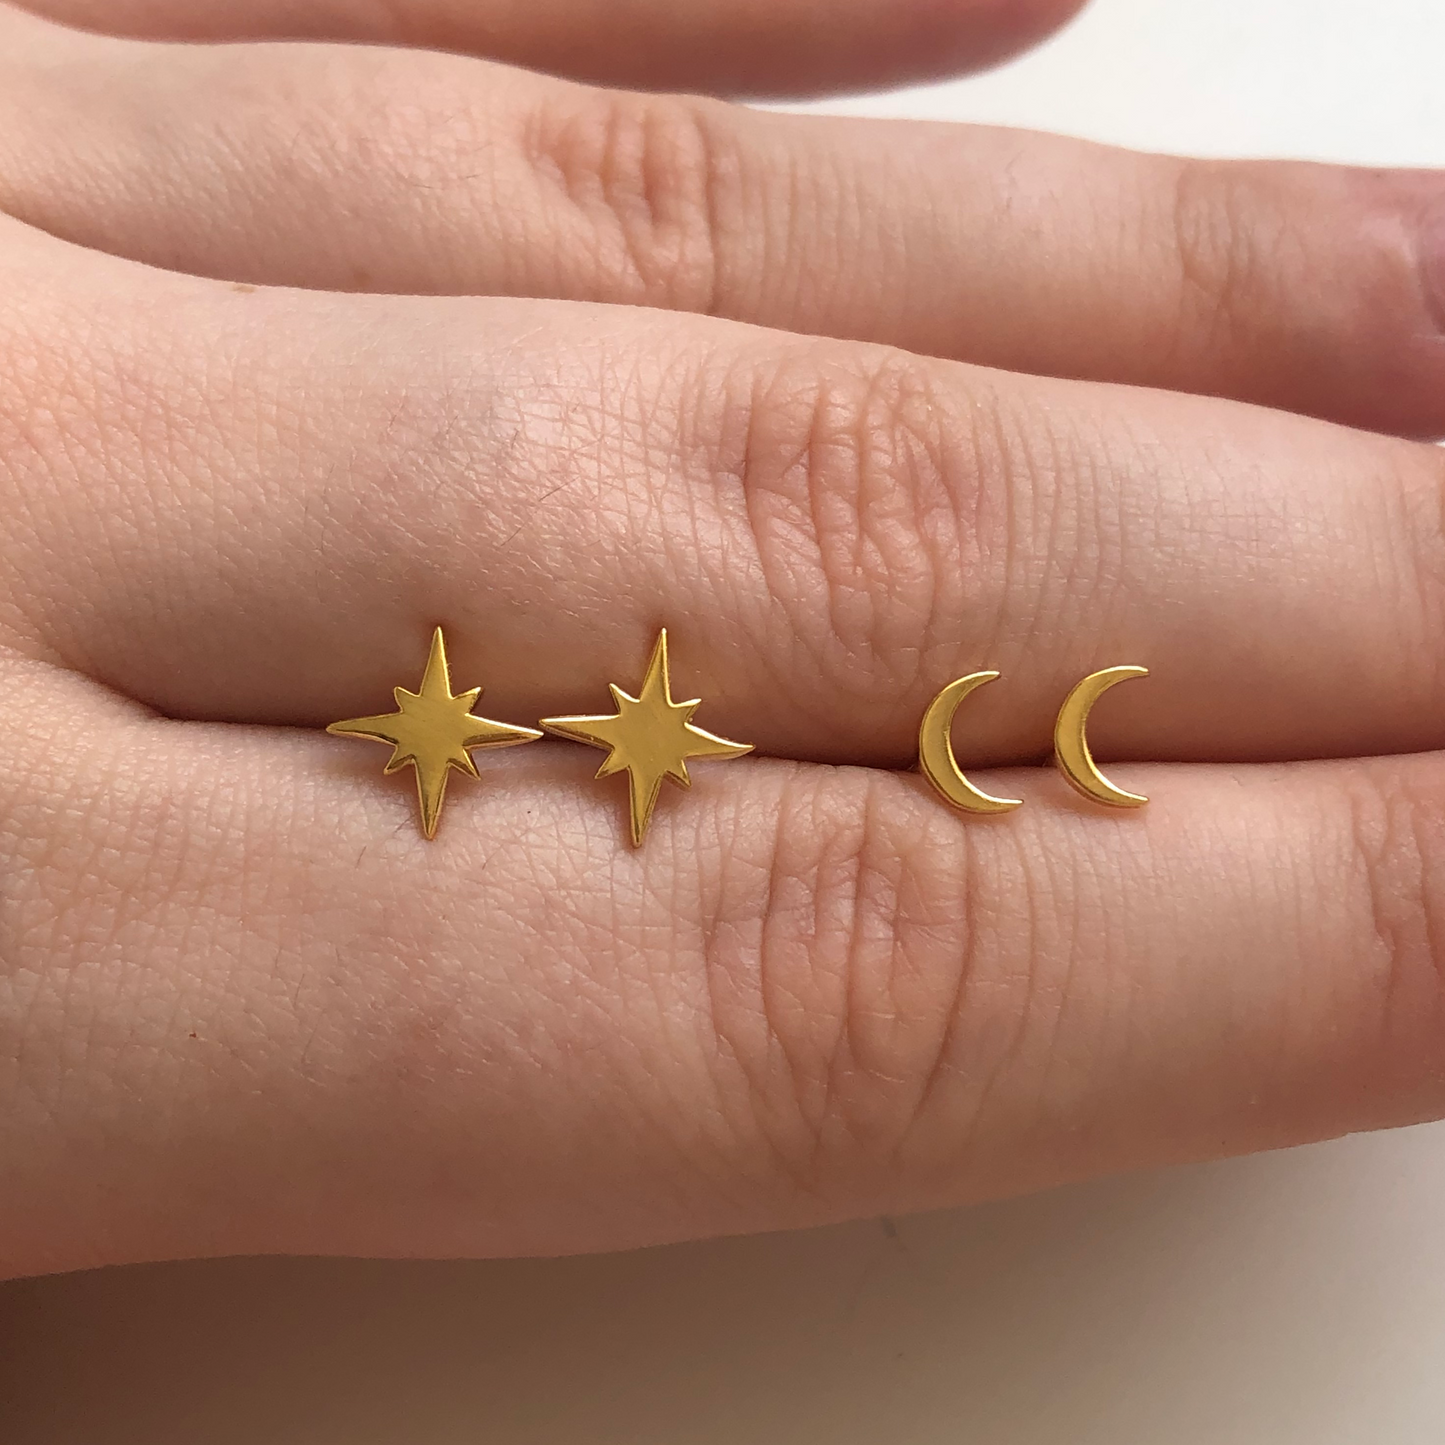 Mini Moon Stud Earrings and Supernova Star Stud Earrings